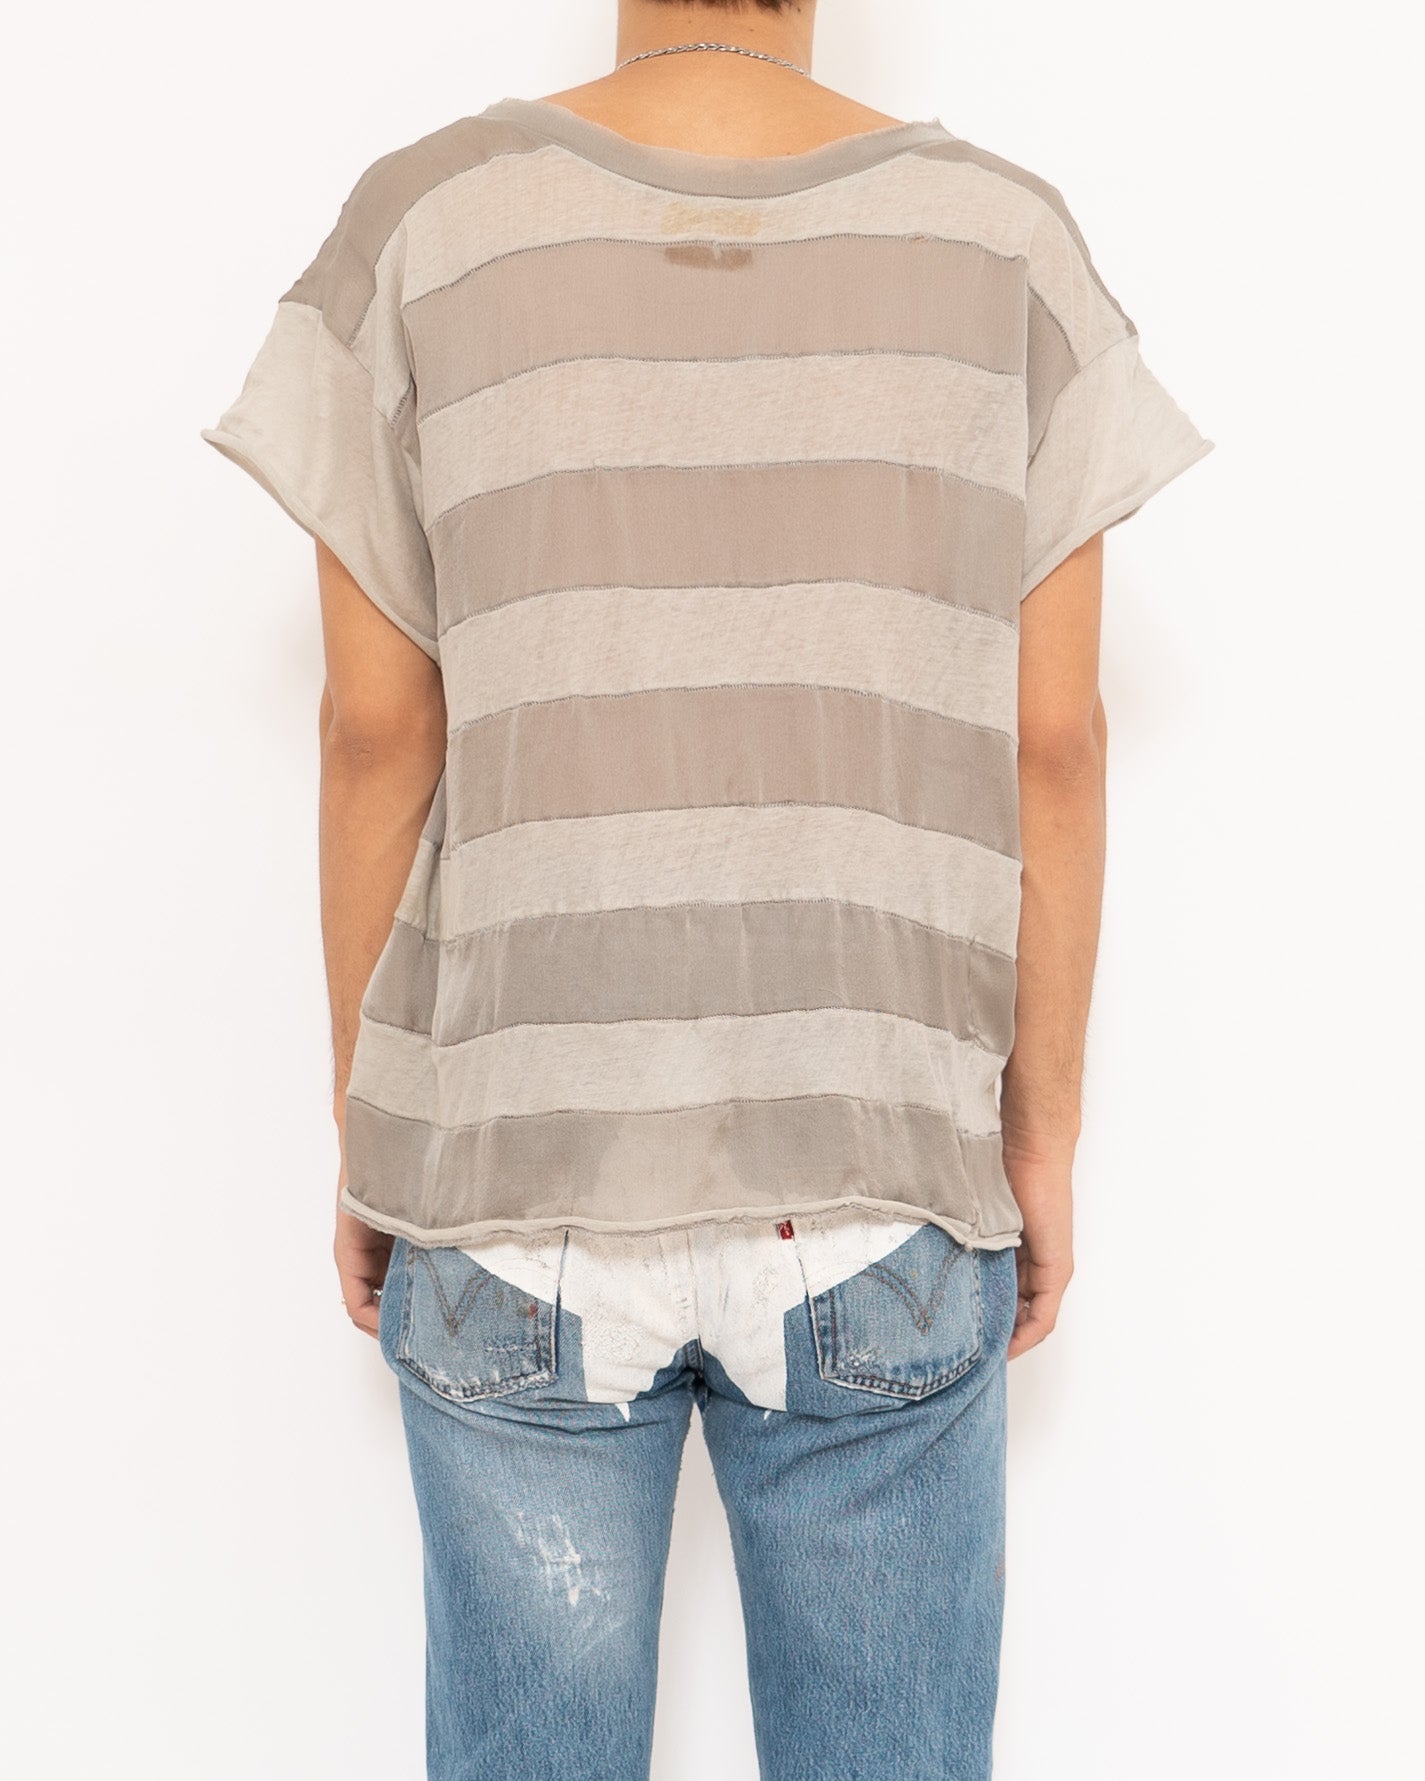 SS06 Jersey Cotton & Silk Shirt Sample